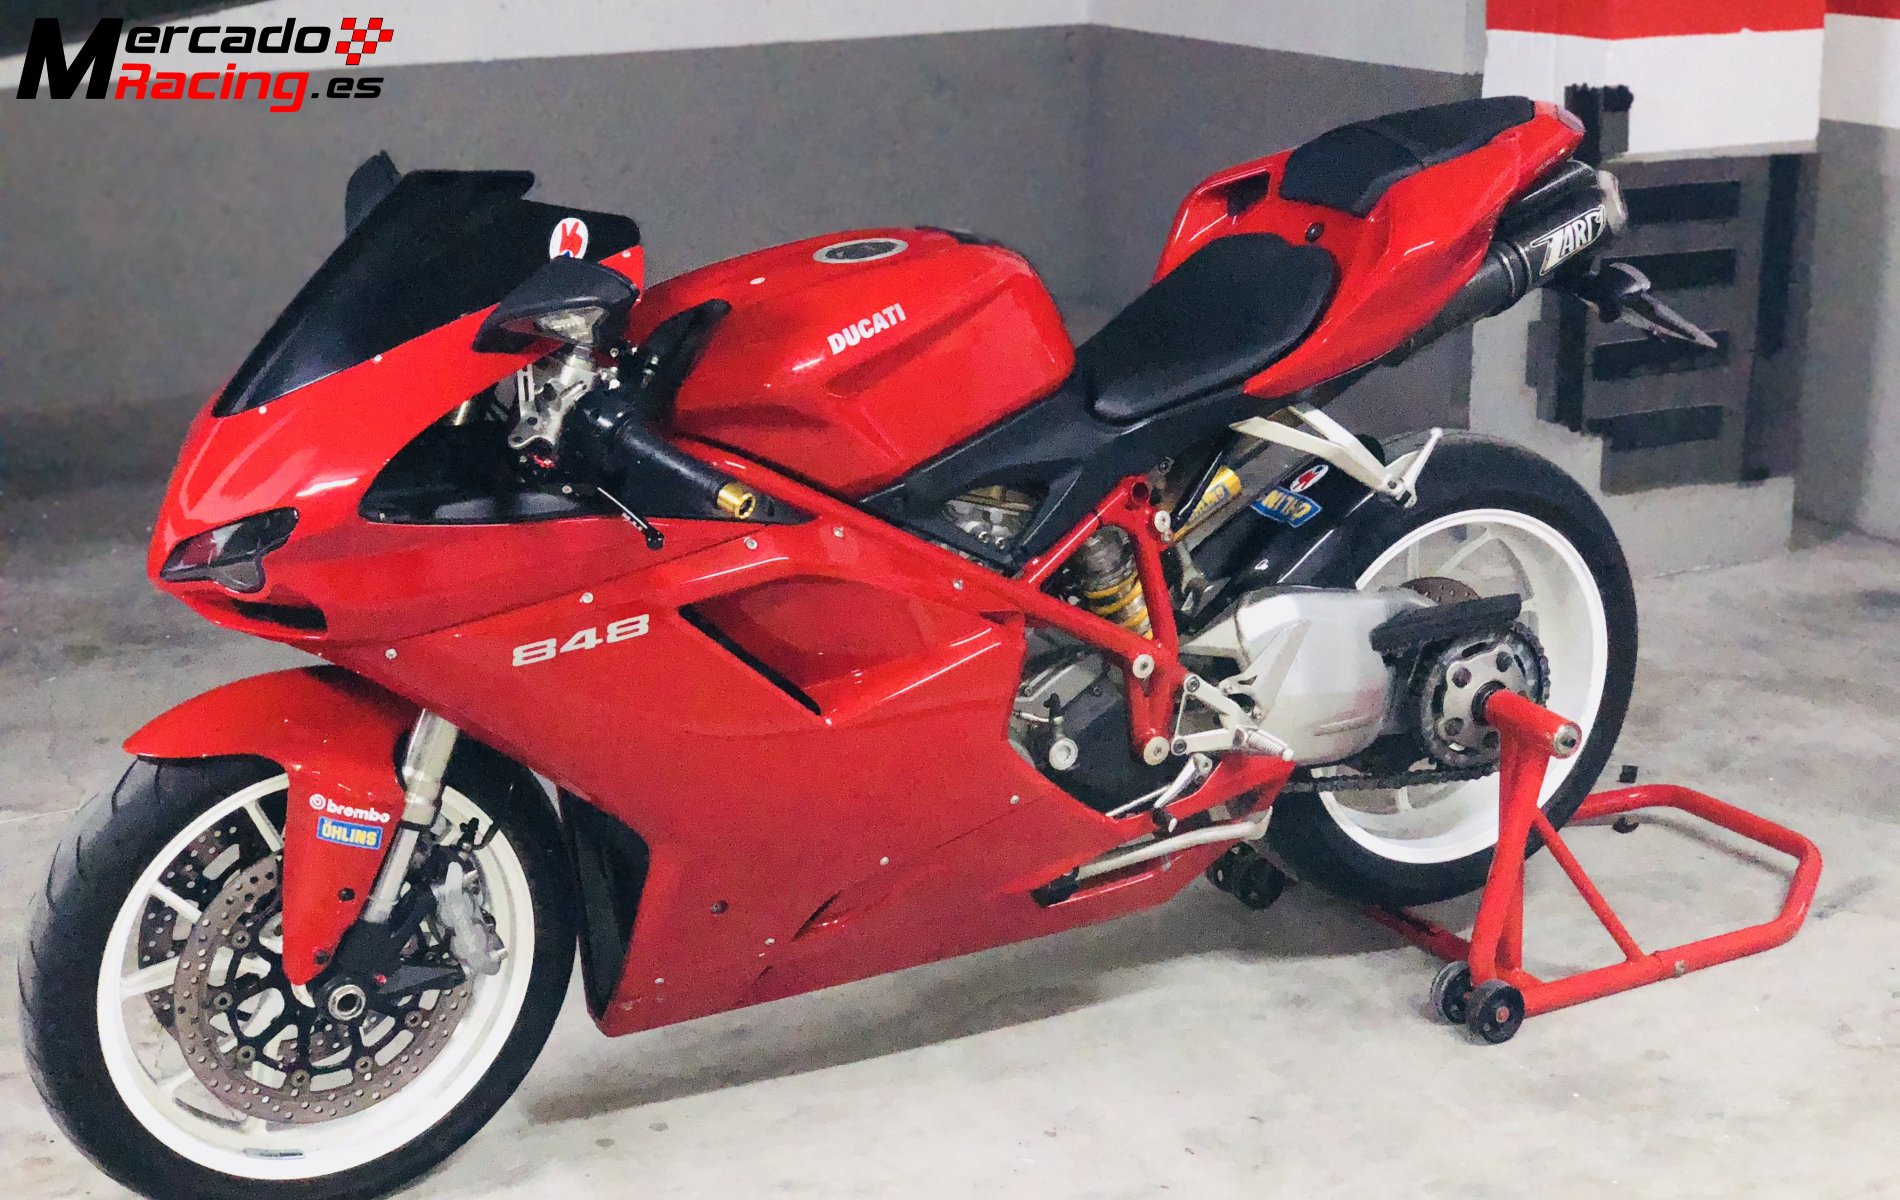 Ducati 848 motor nuevo en garantía oficial 